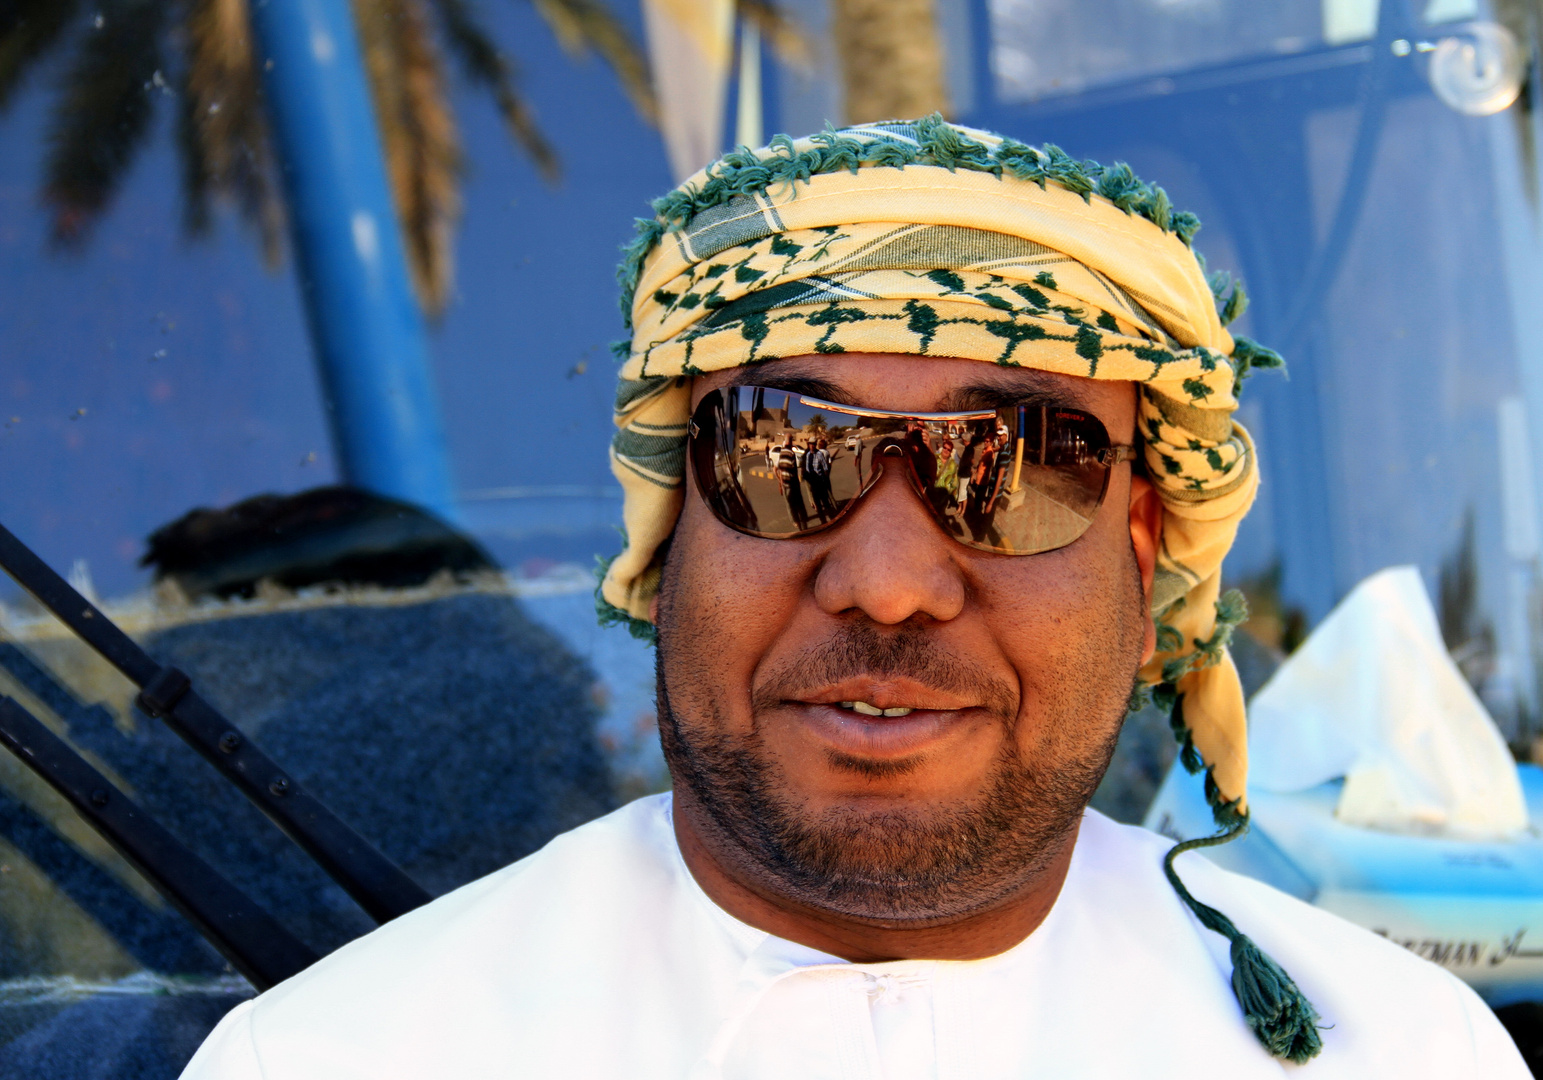 Zum Spiegeltag: The Bus Driver from Oman ...